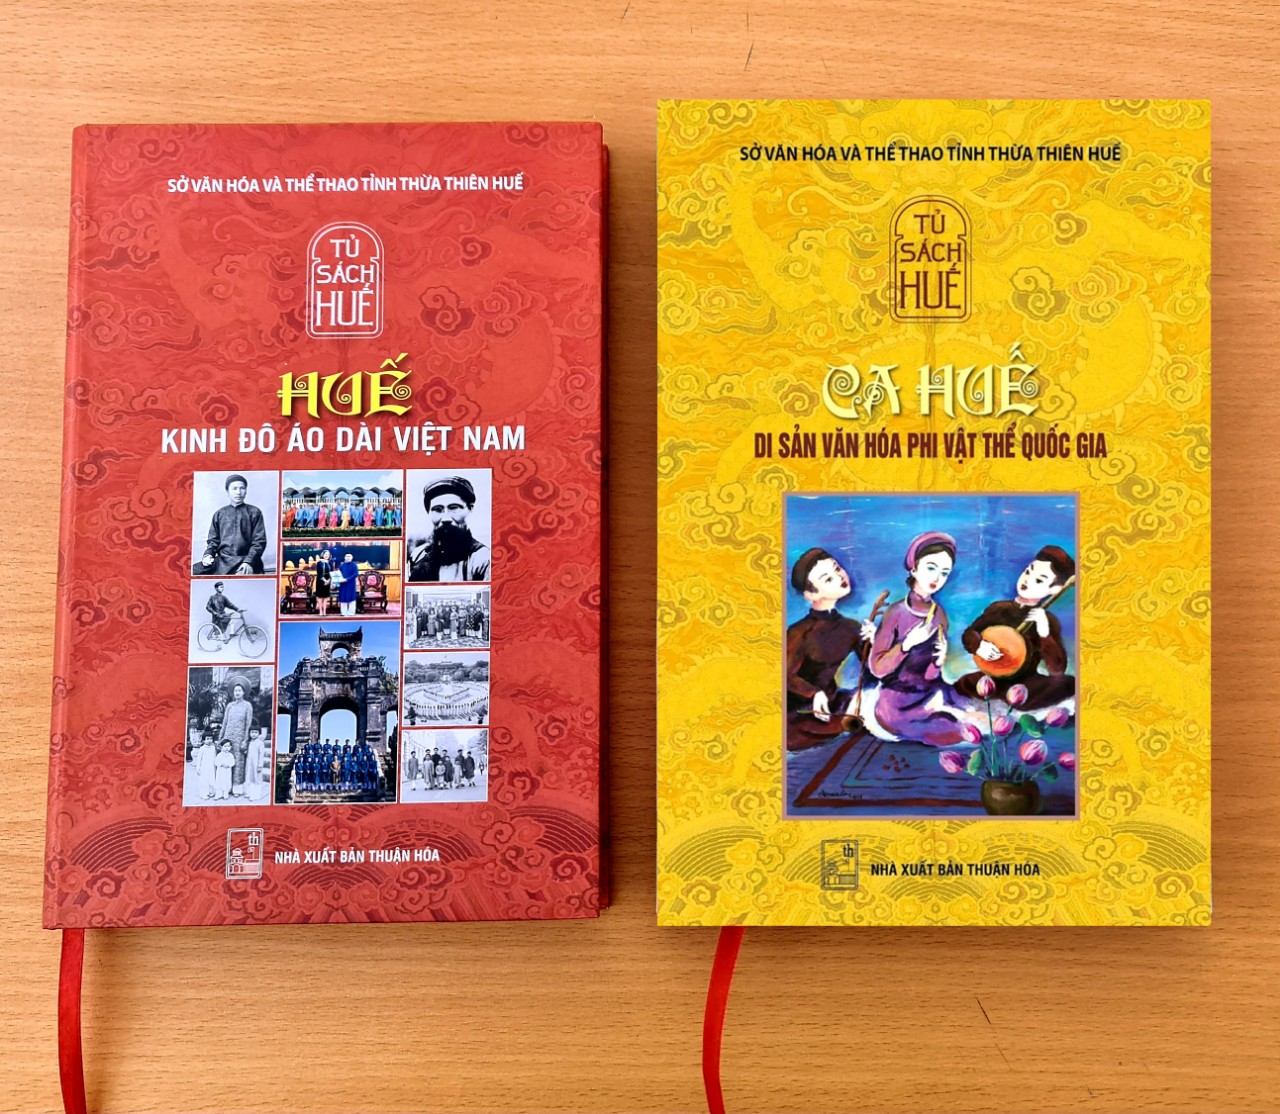 Giới thiệu ấn phẩm mới của Tủ sách Huế: Huế - Kinh đô áo dài Việt Nam và Ca Huế - Di sản văn hóa phi vật thể quốc gia